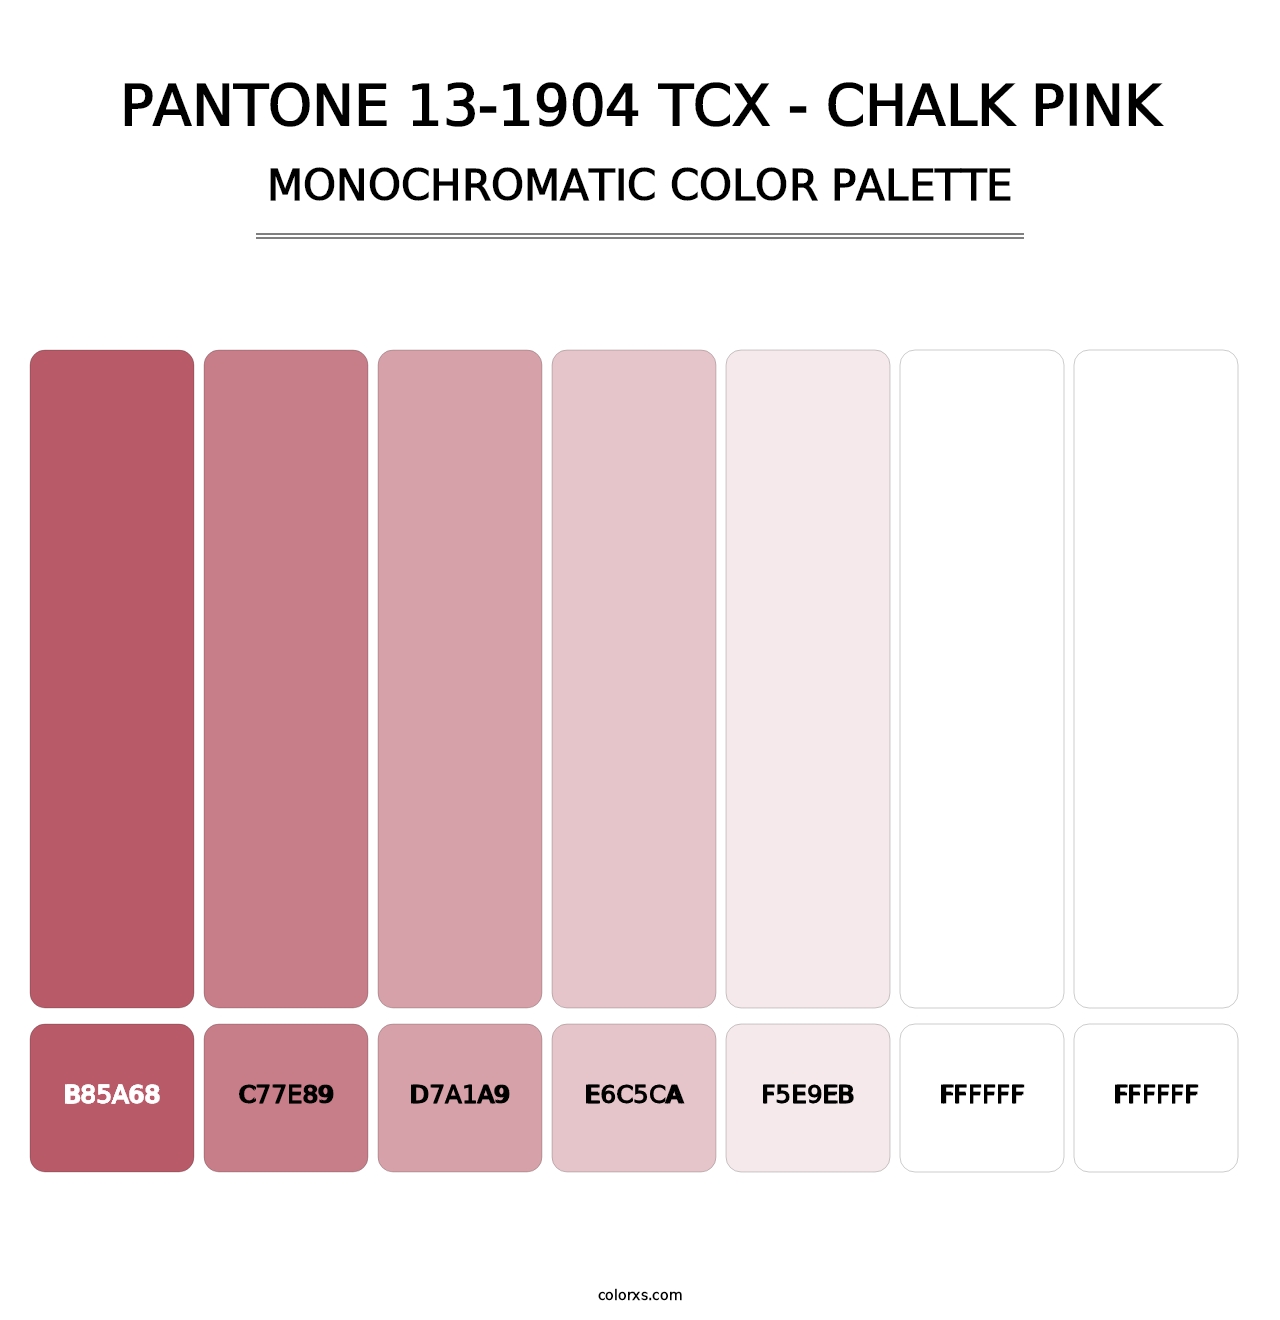 PANTONE 13-1904 TCX - Chalk Pink - Monochromatic Color Palette